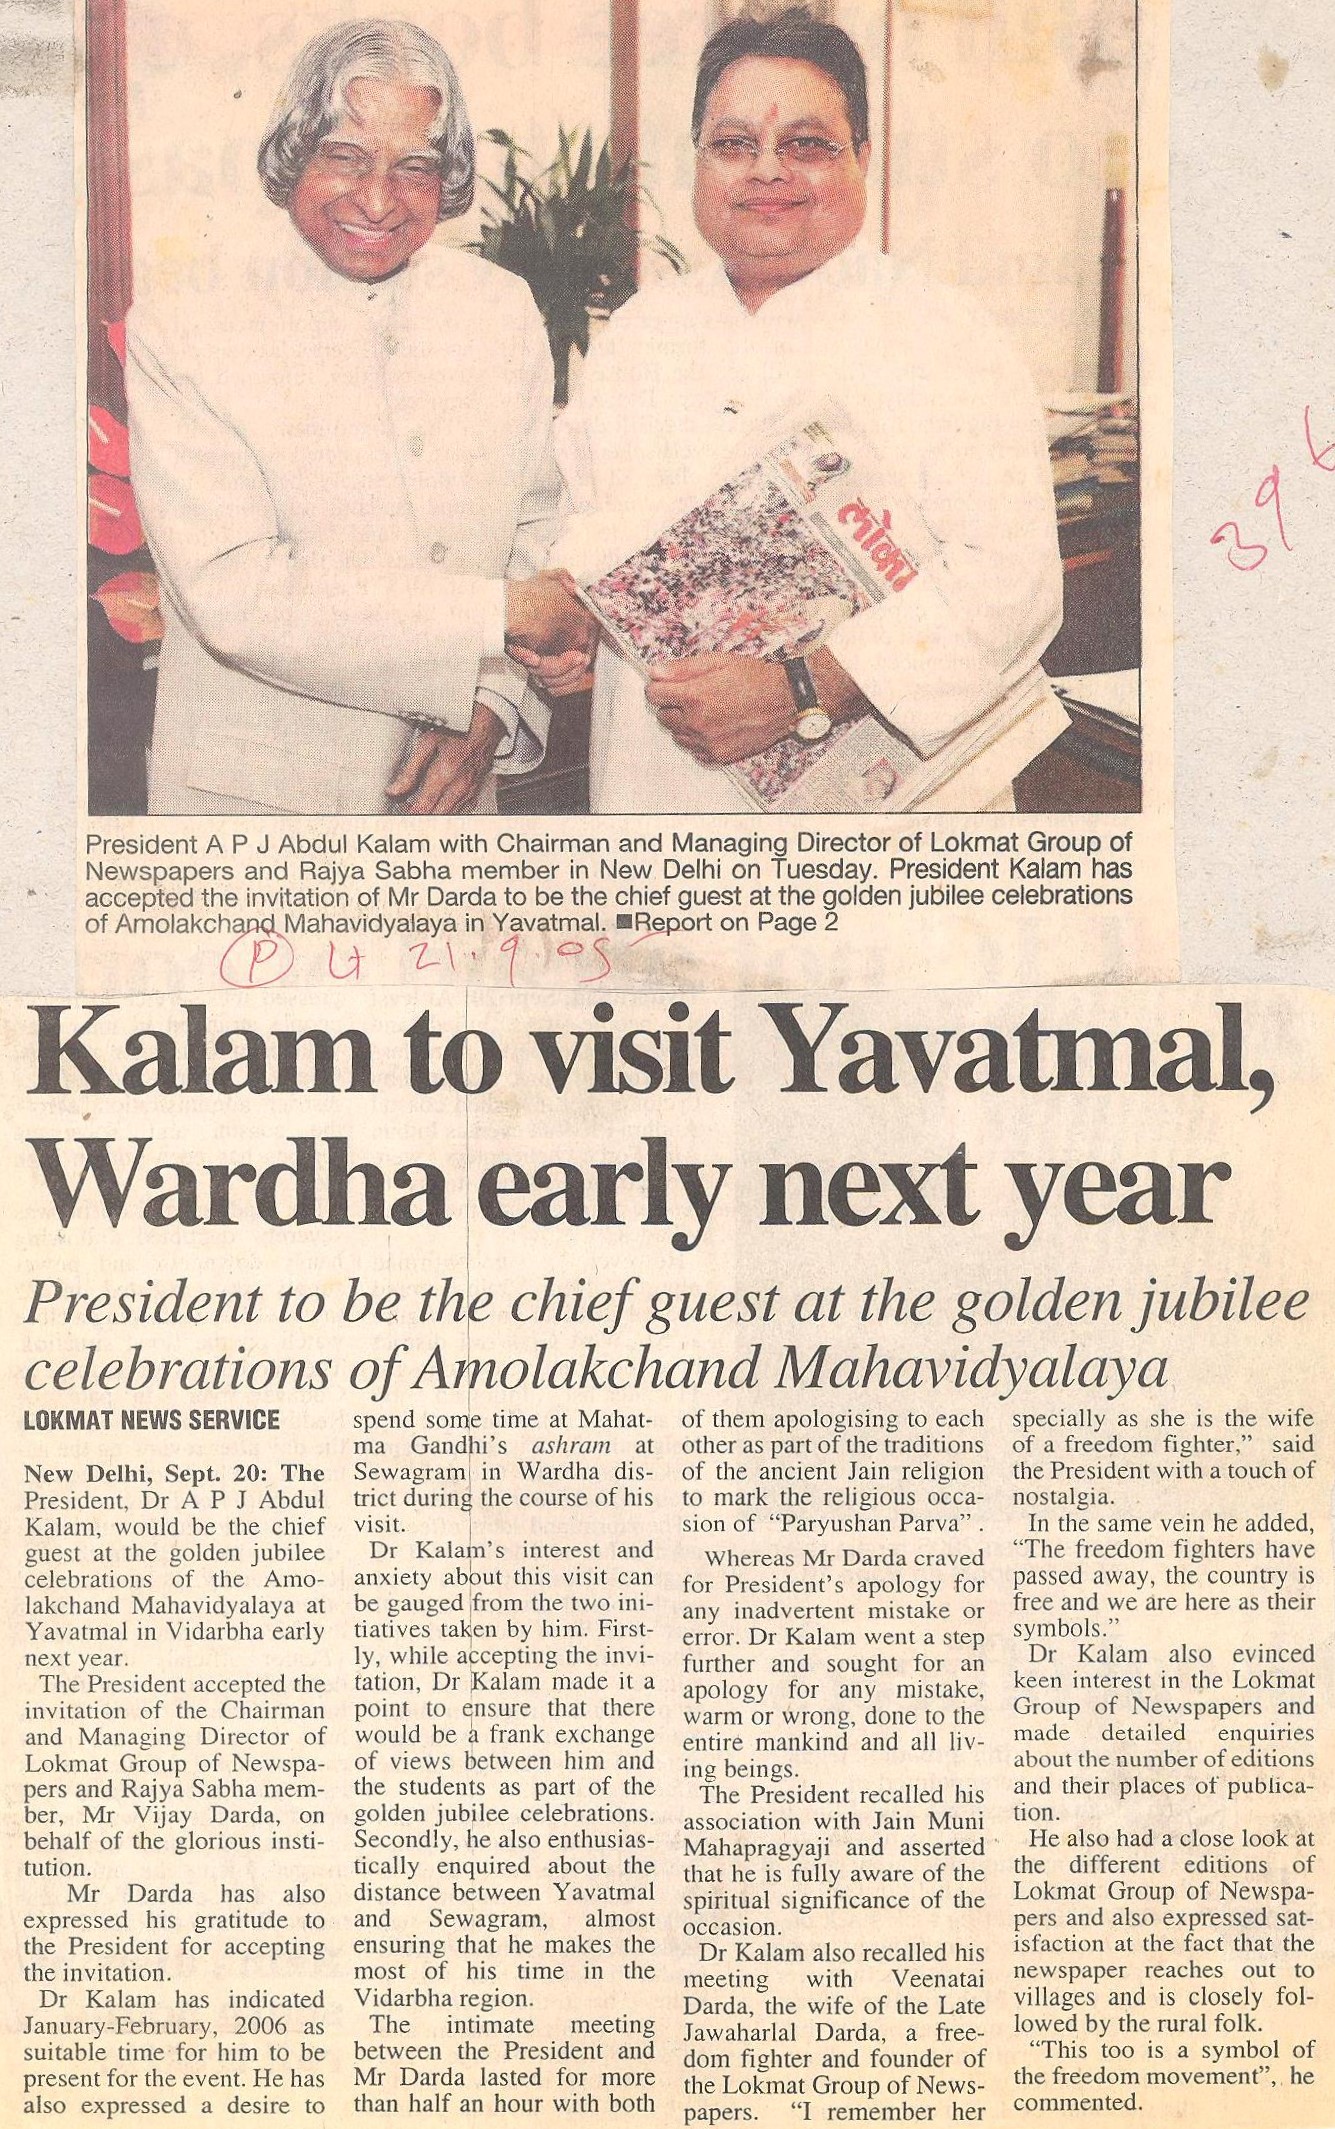 Kalam to visit Yavatmal, Wardha early next year